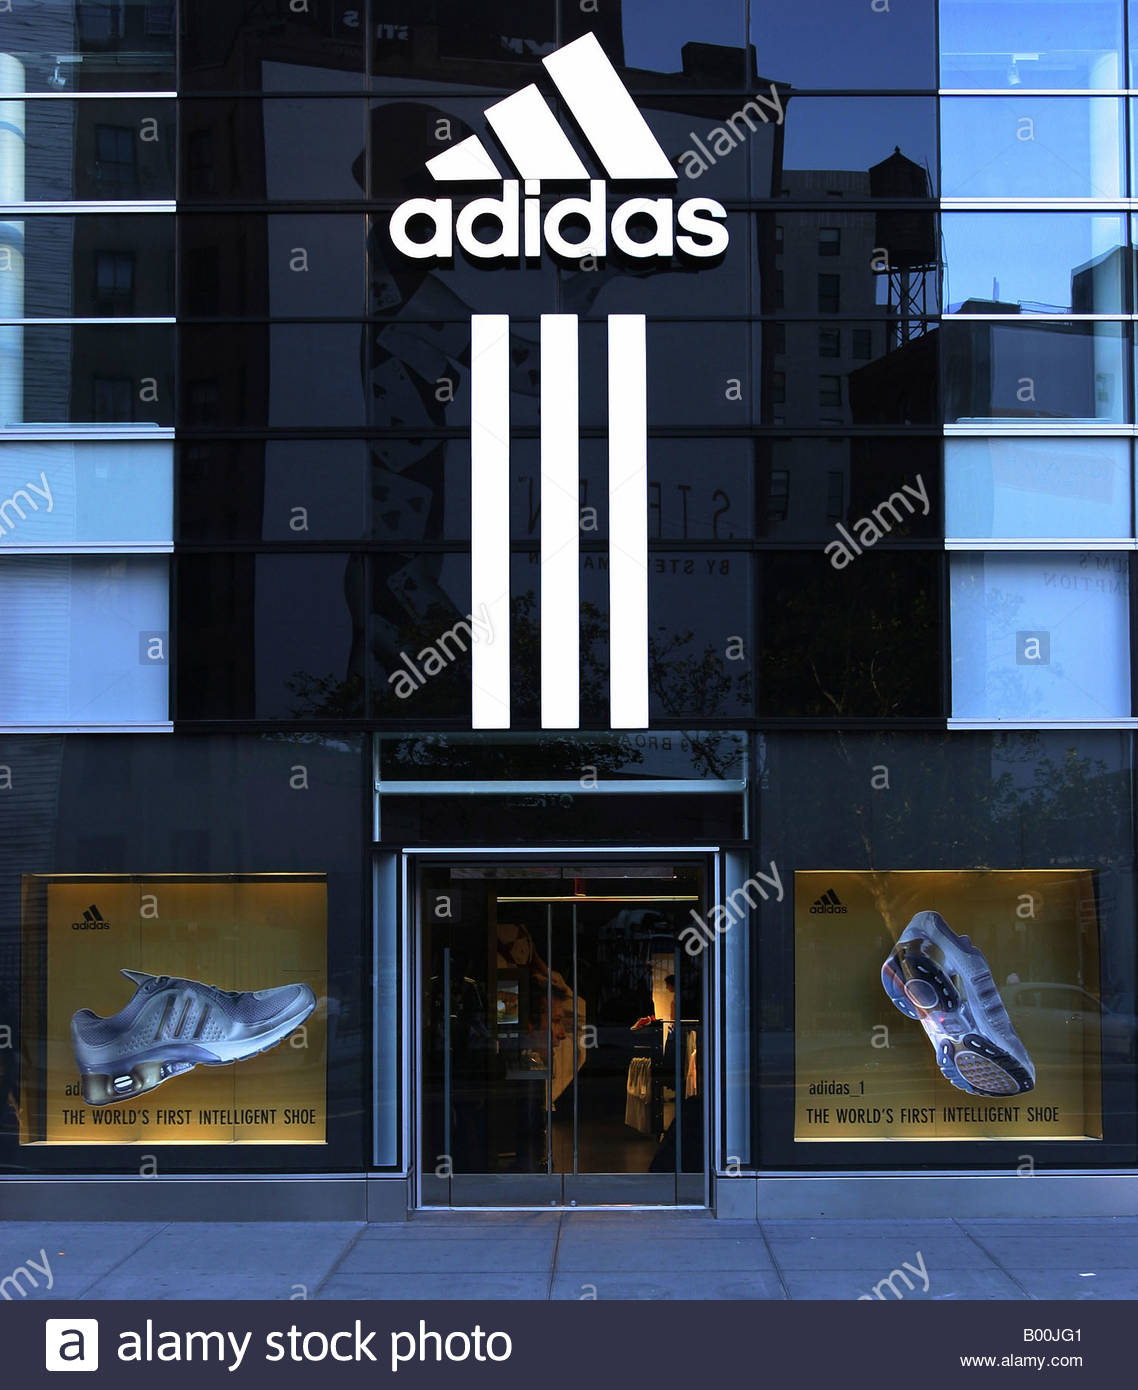 shop adidas usa Off 68% - www.byaydinsuitehotel.com